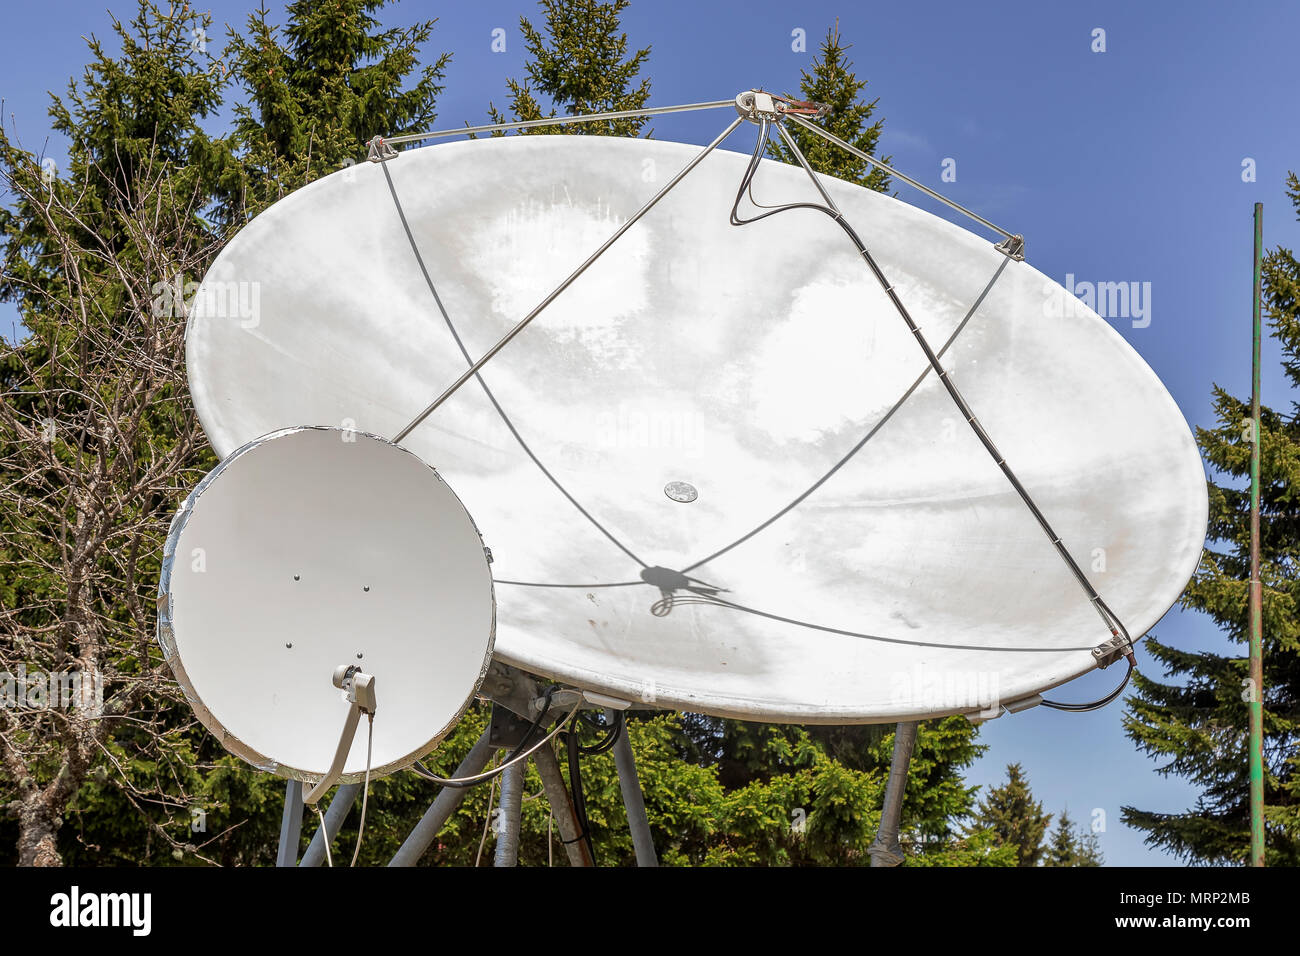 Zwei große Satellitenschüssel outdoor, Parabolantenne. Satelliten-kommunikation Festplatten. Stockfoto